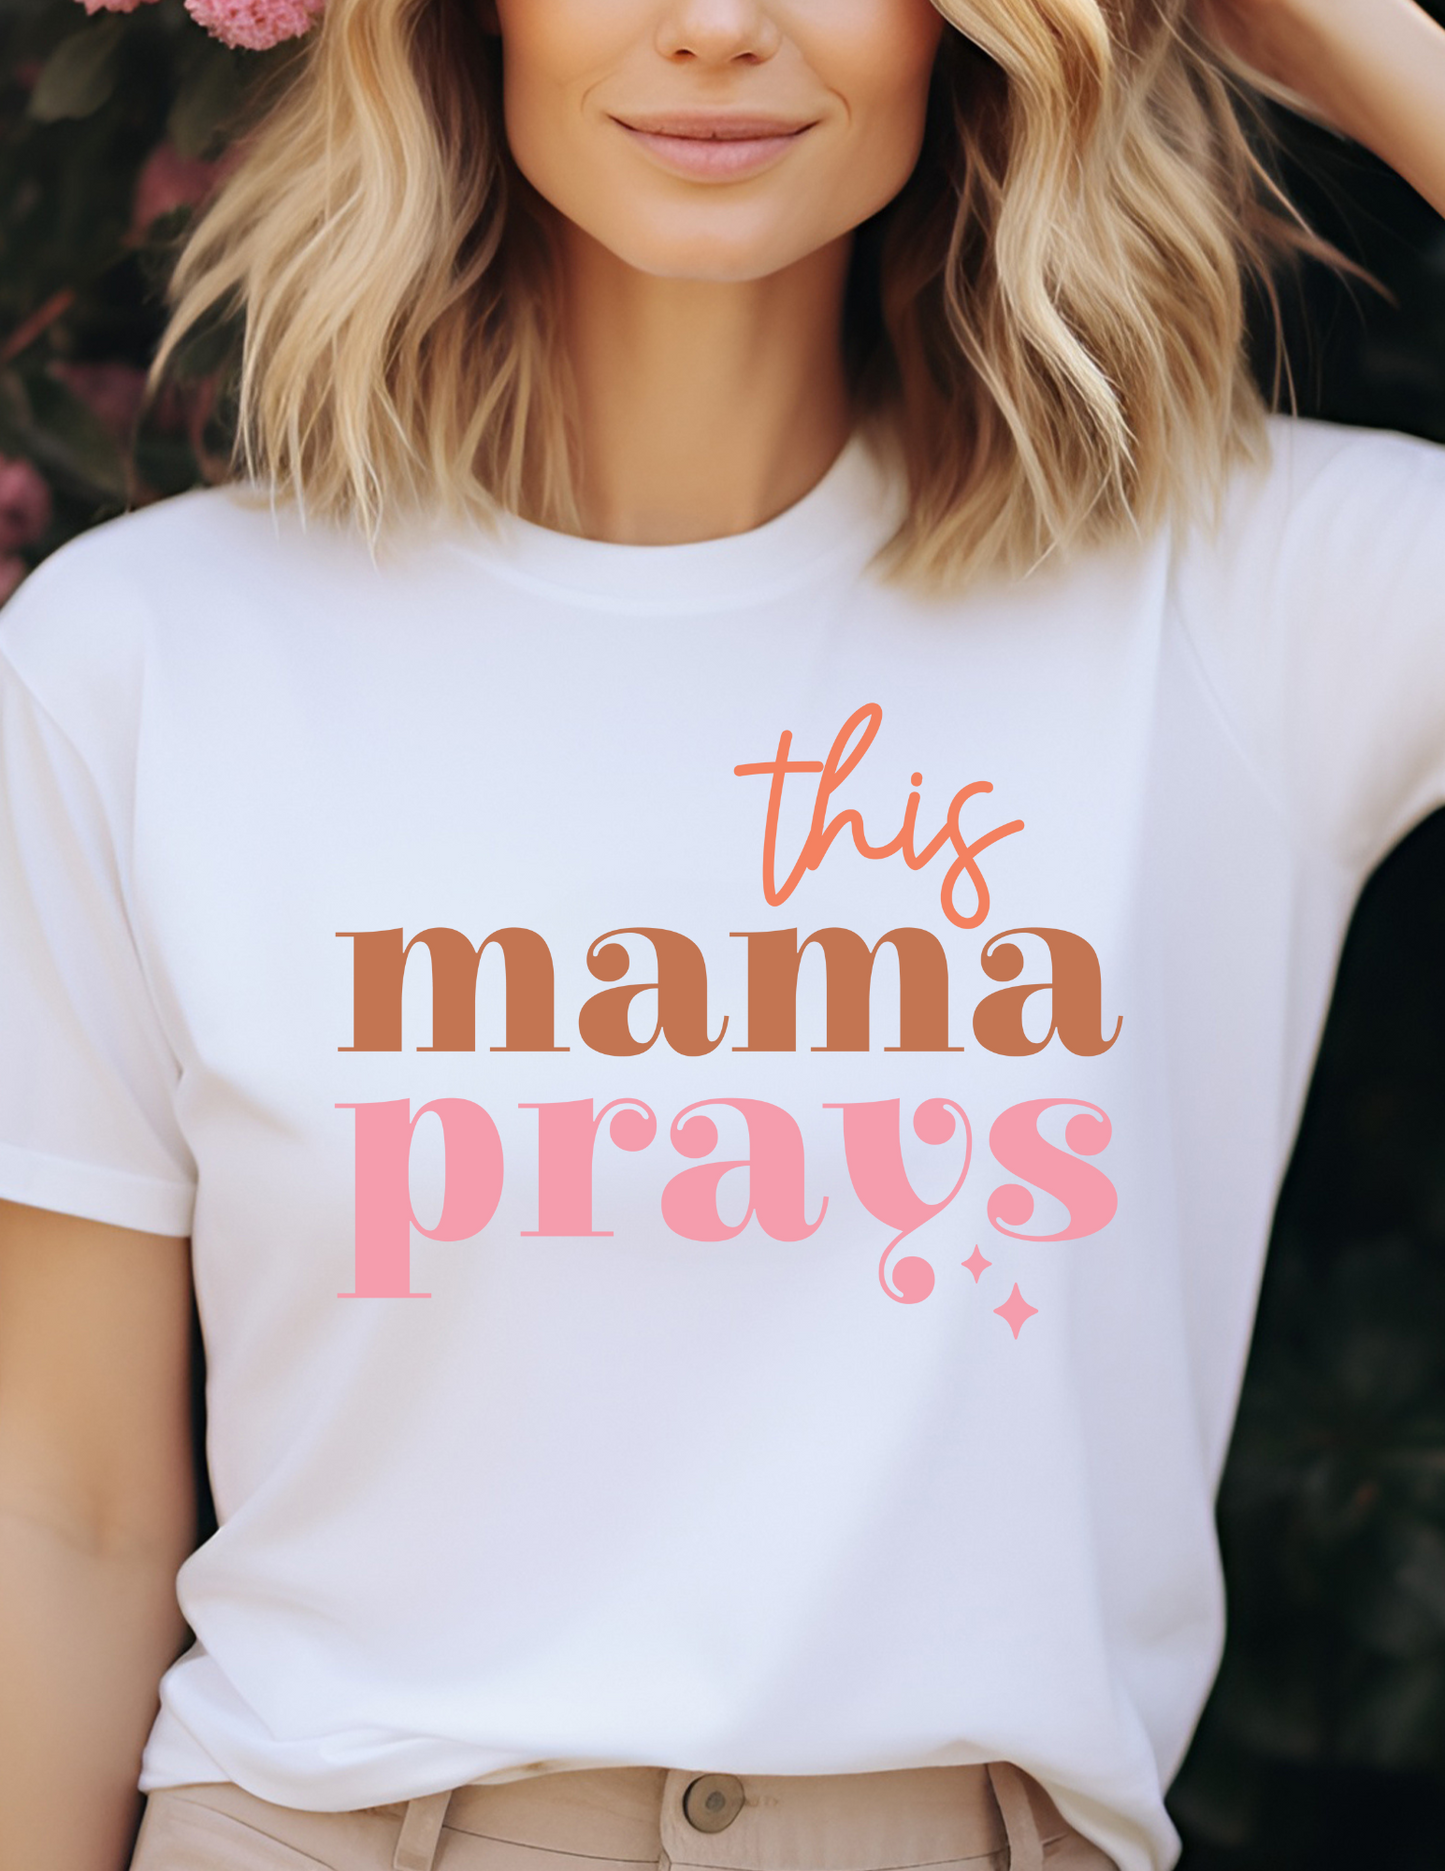 This mama pray's T-shirt